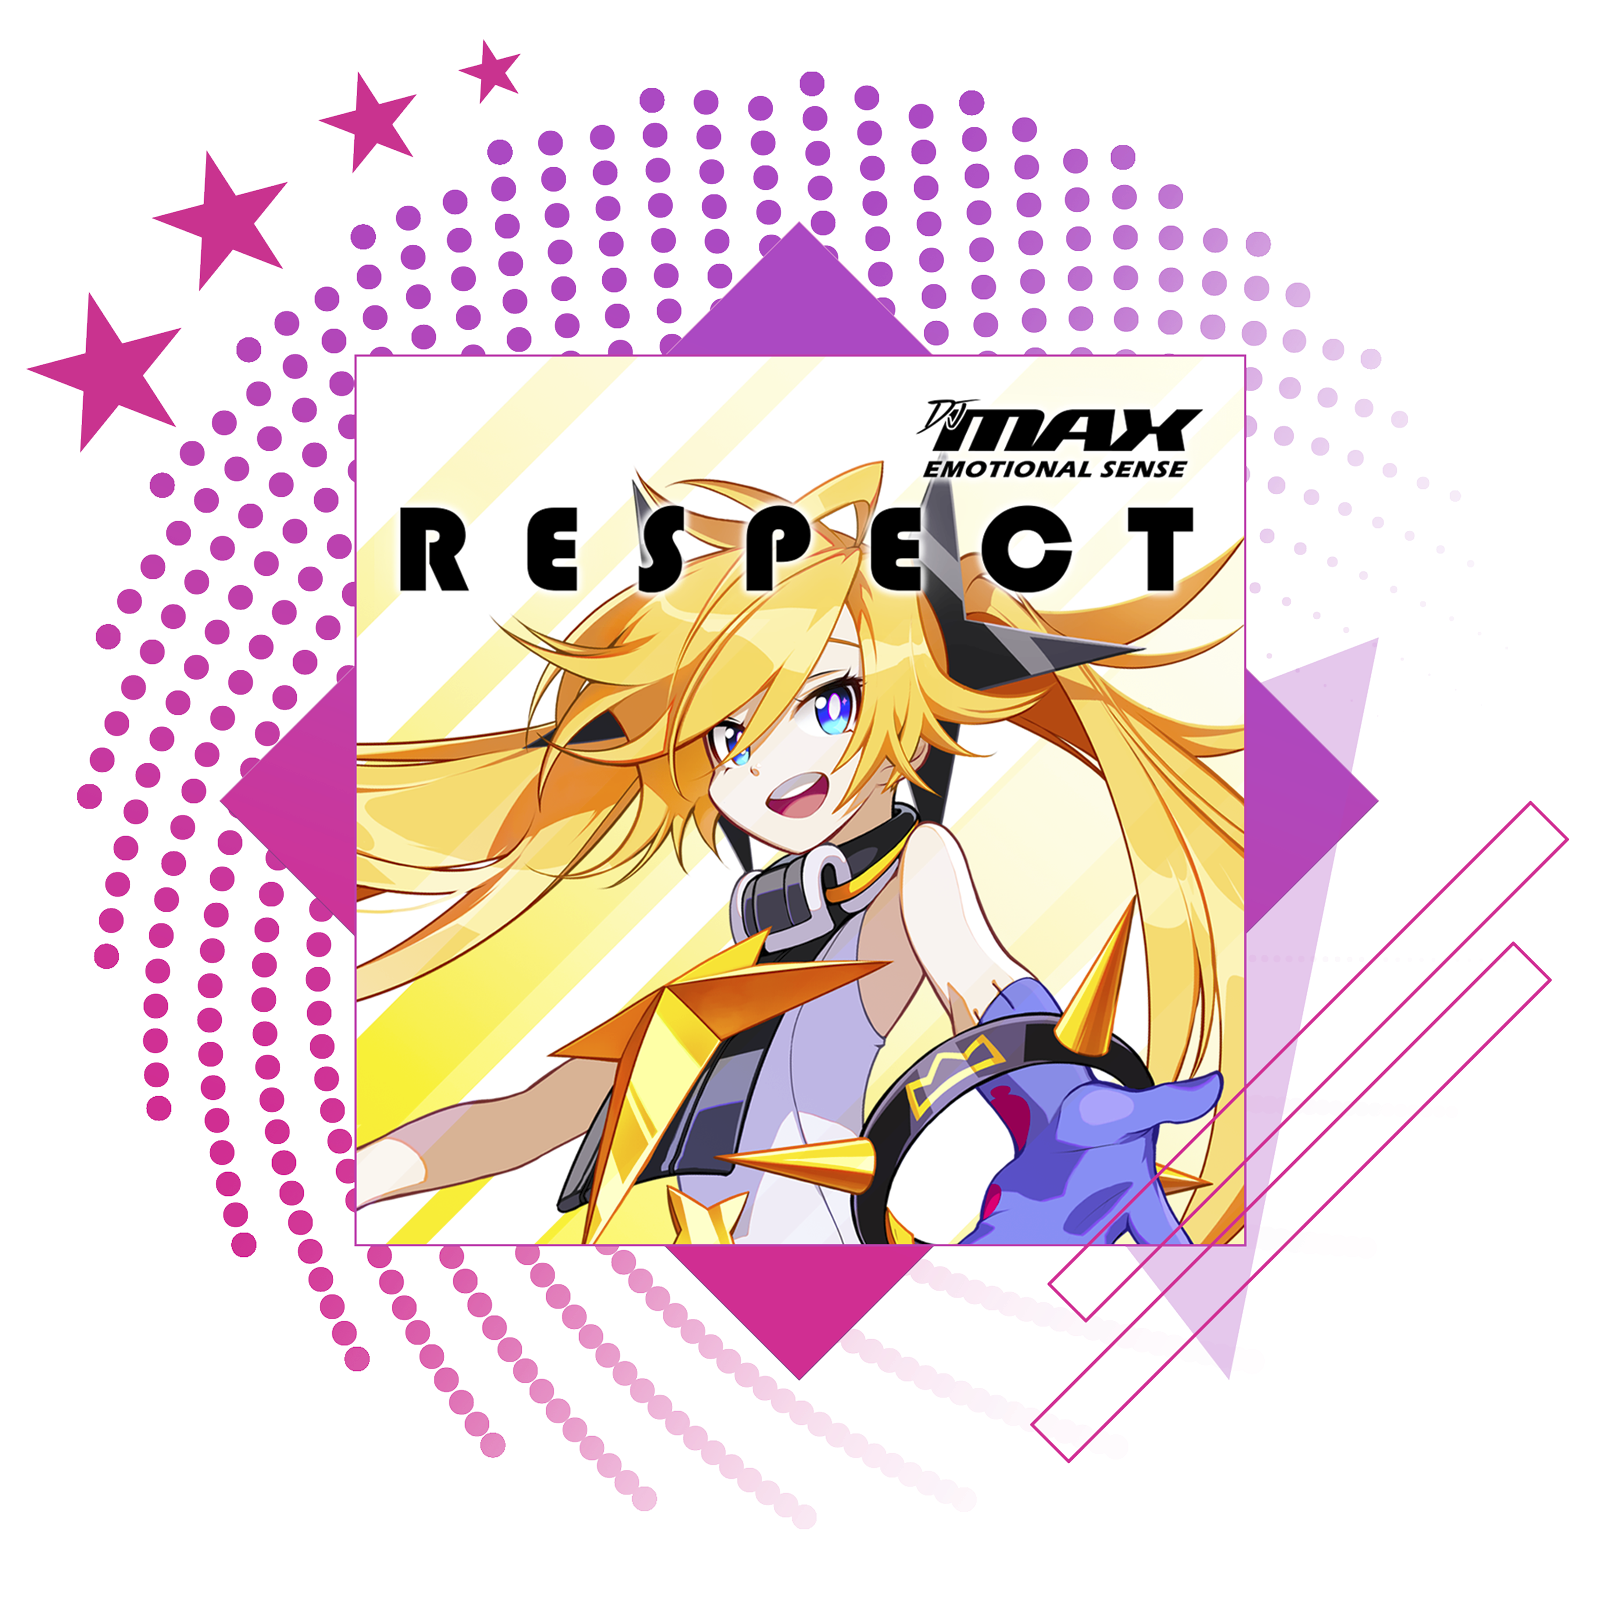 Лучшие ритмичные игры – изображение с обложкой DJMax Respect.